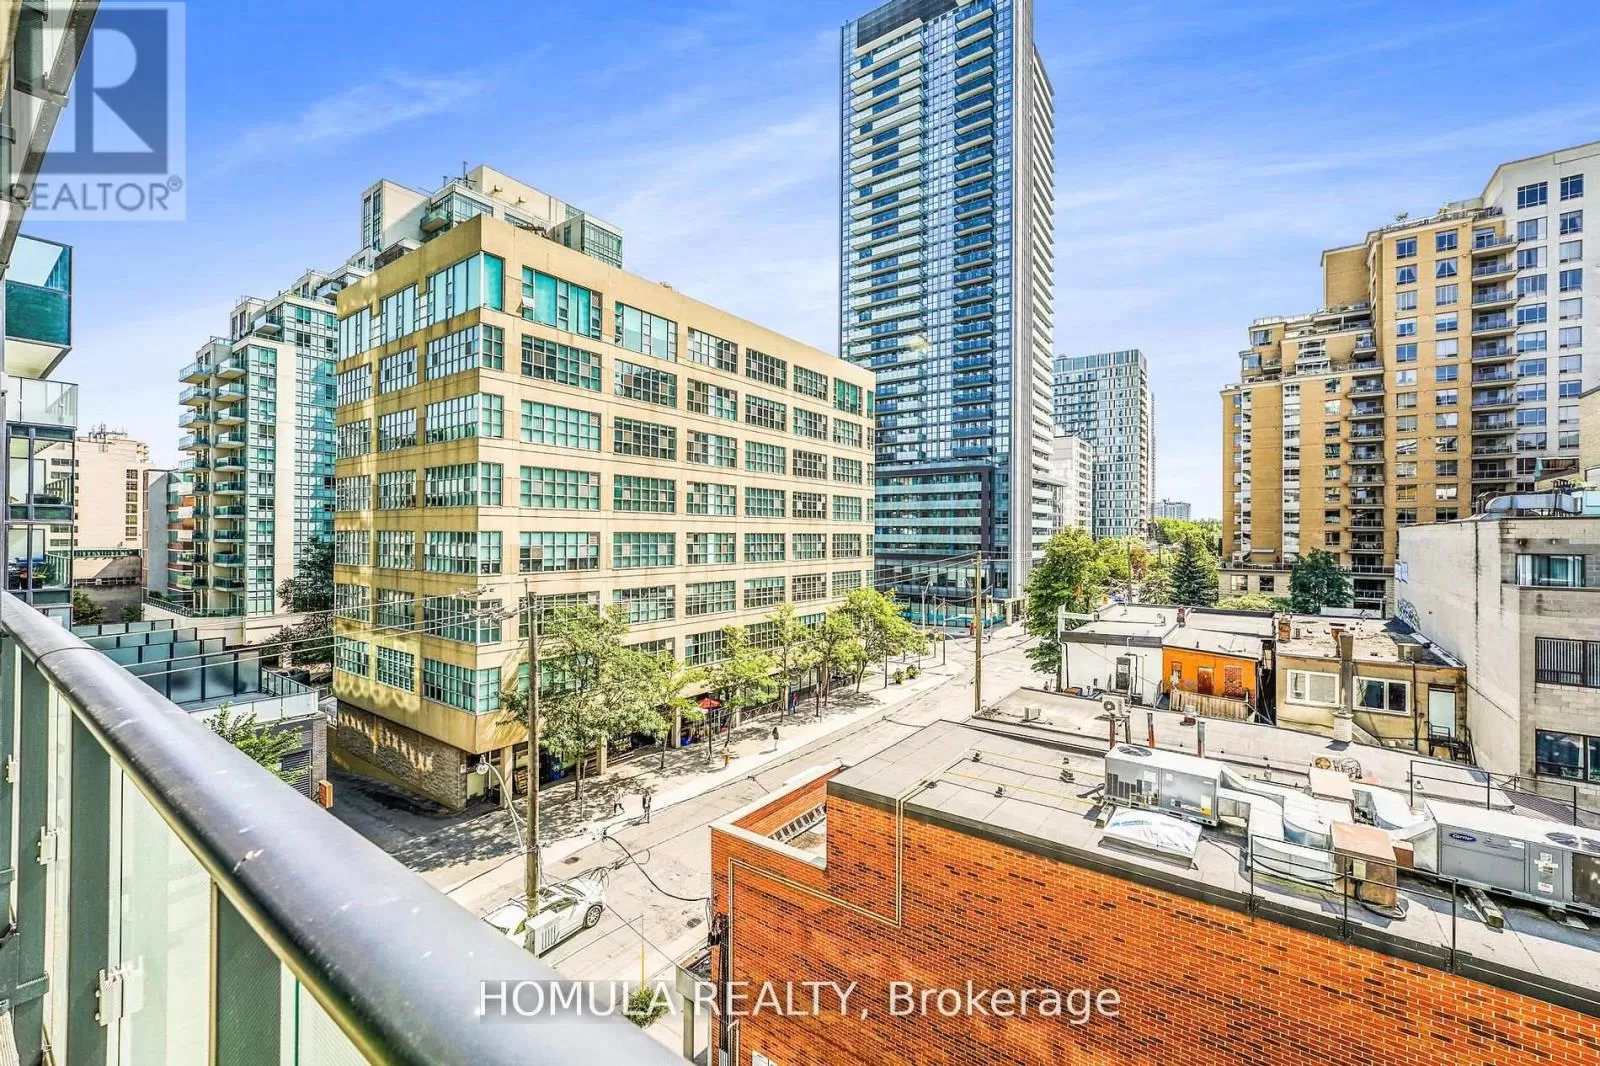 Apartment for rent: 515 - 161 Roehampton Avenue, Toronto, Ontario M4P 0C8